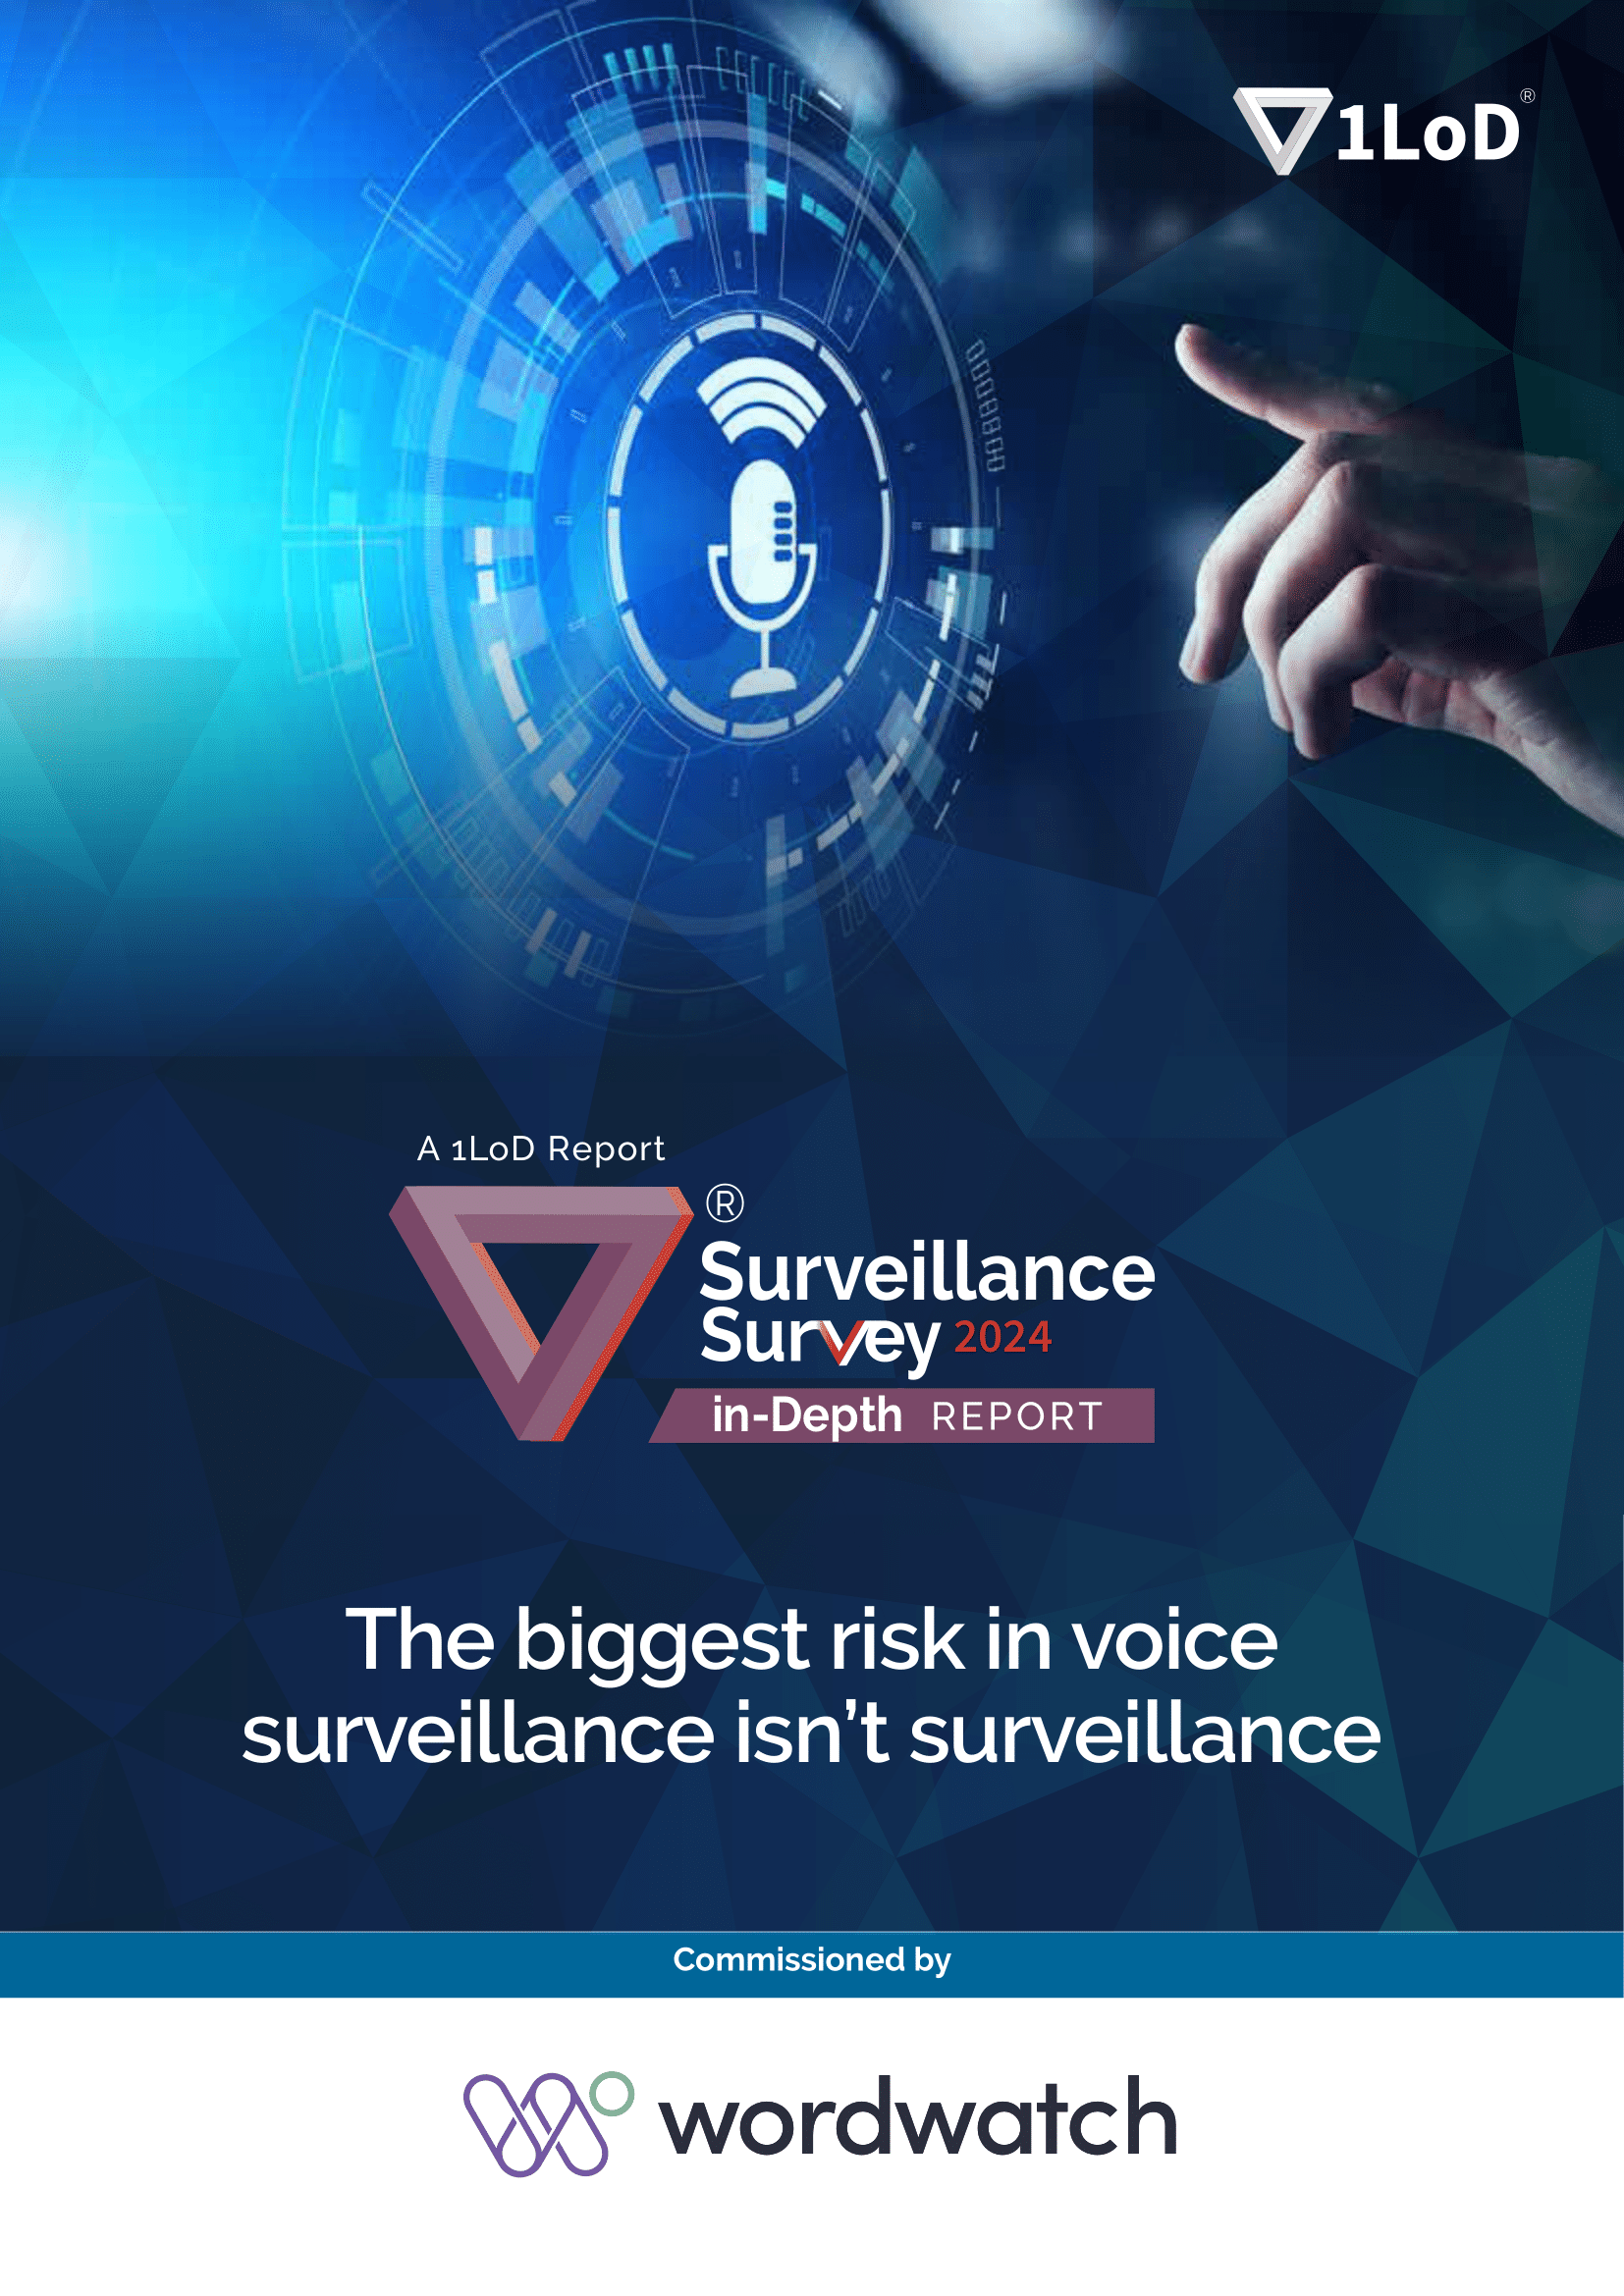 The biggest risk in voice surveillance isn't surveillance